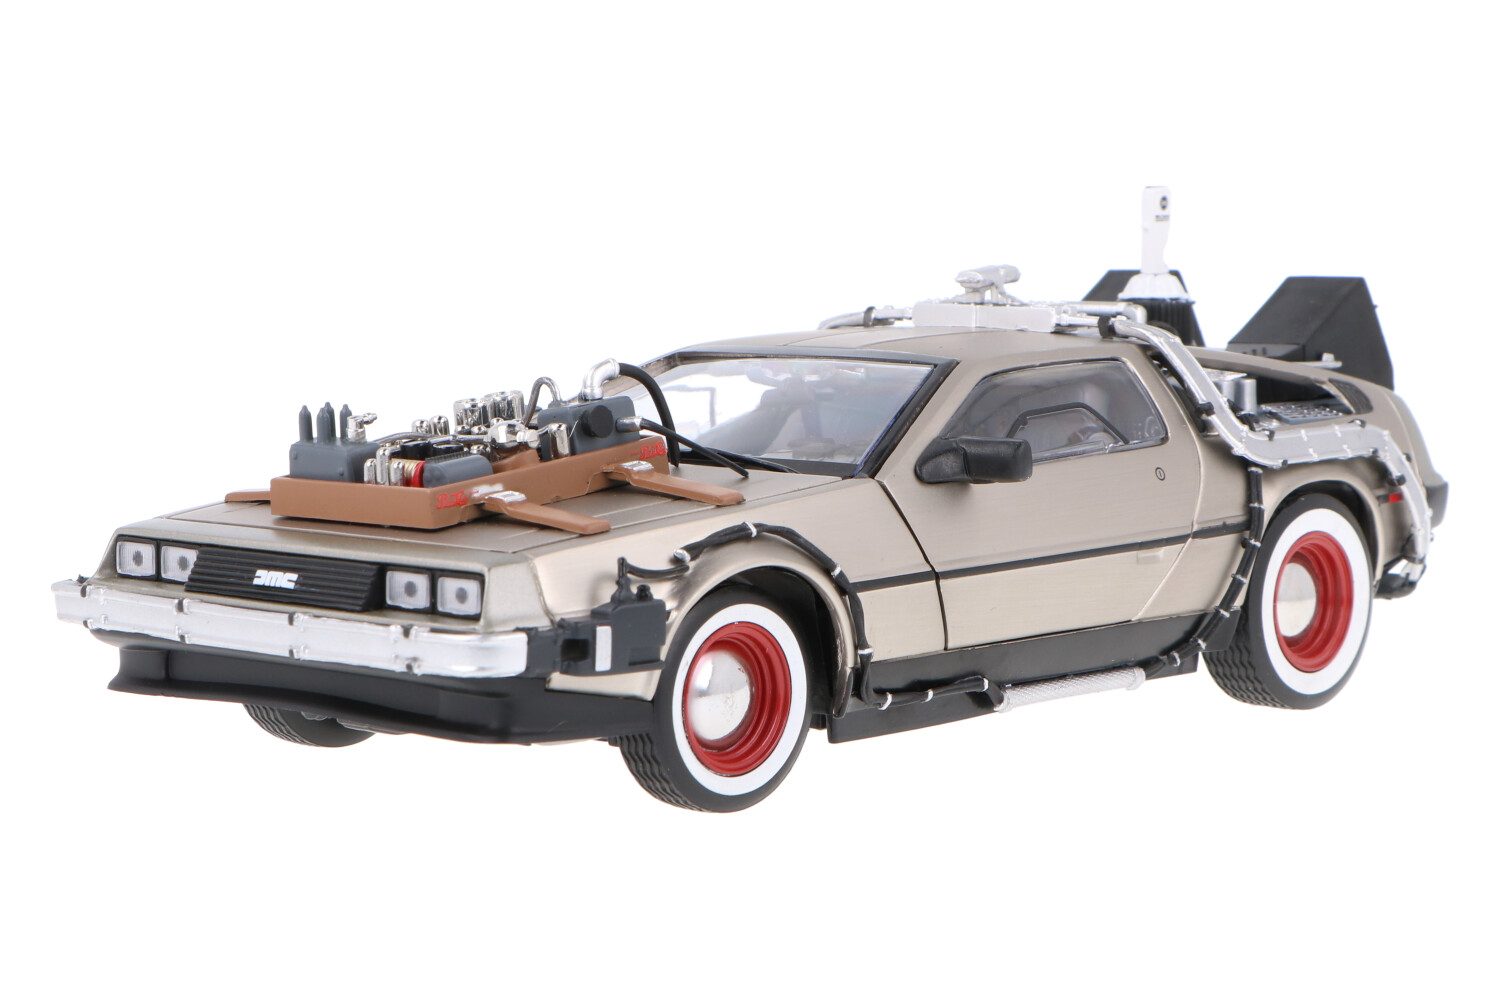 DeLorean DMC 12 Back to The Future - Modelauto schaal 1:18